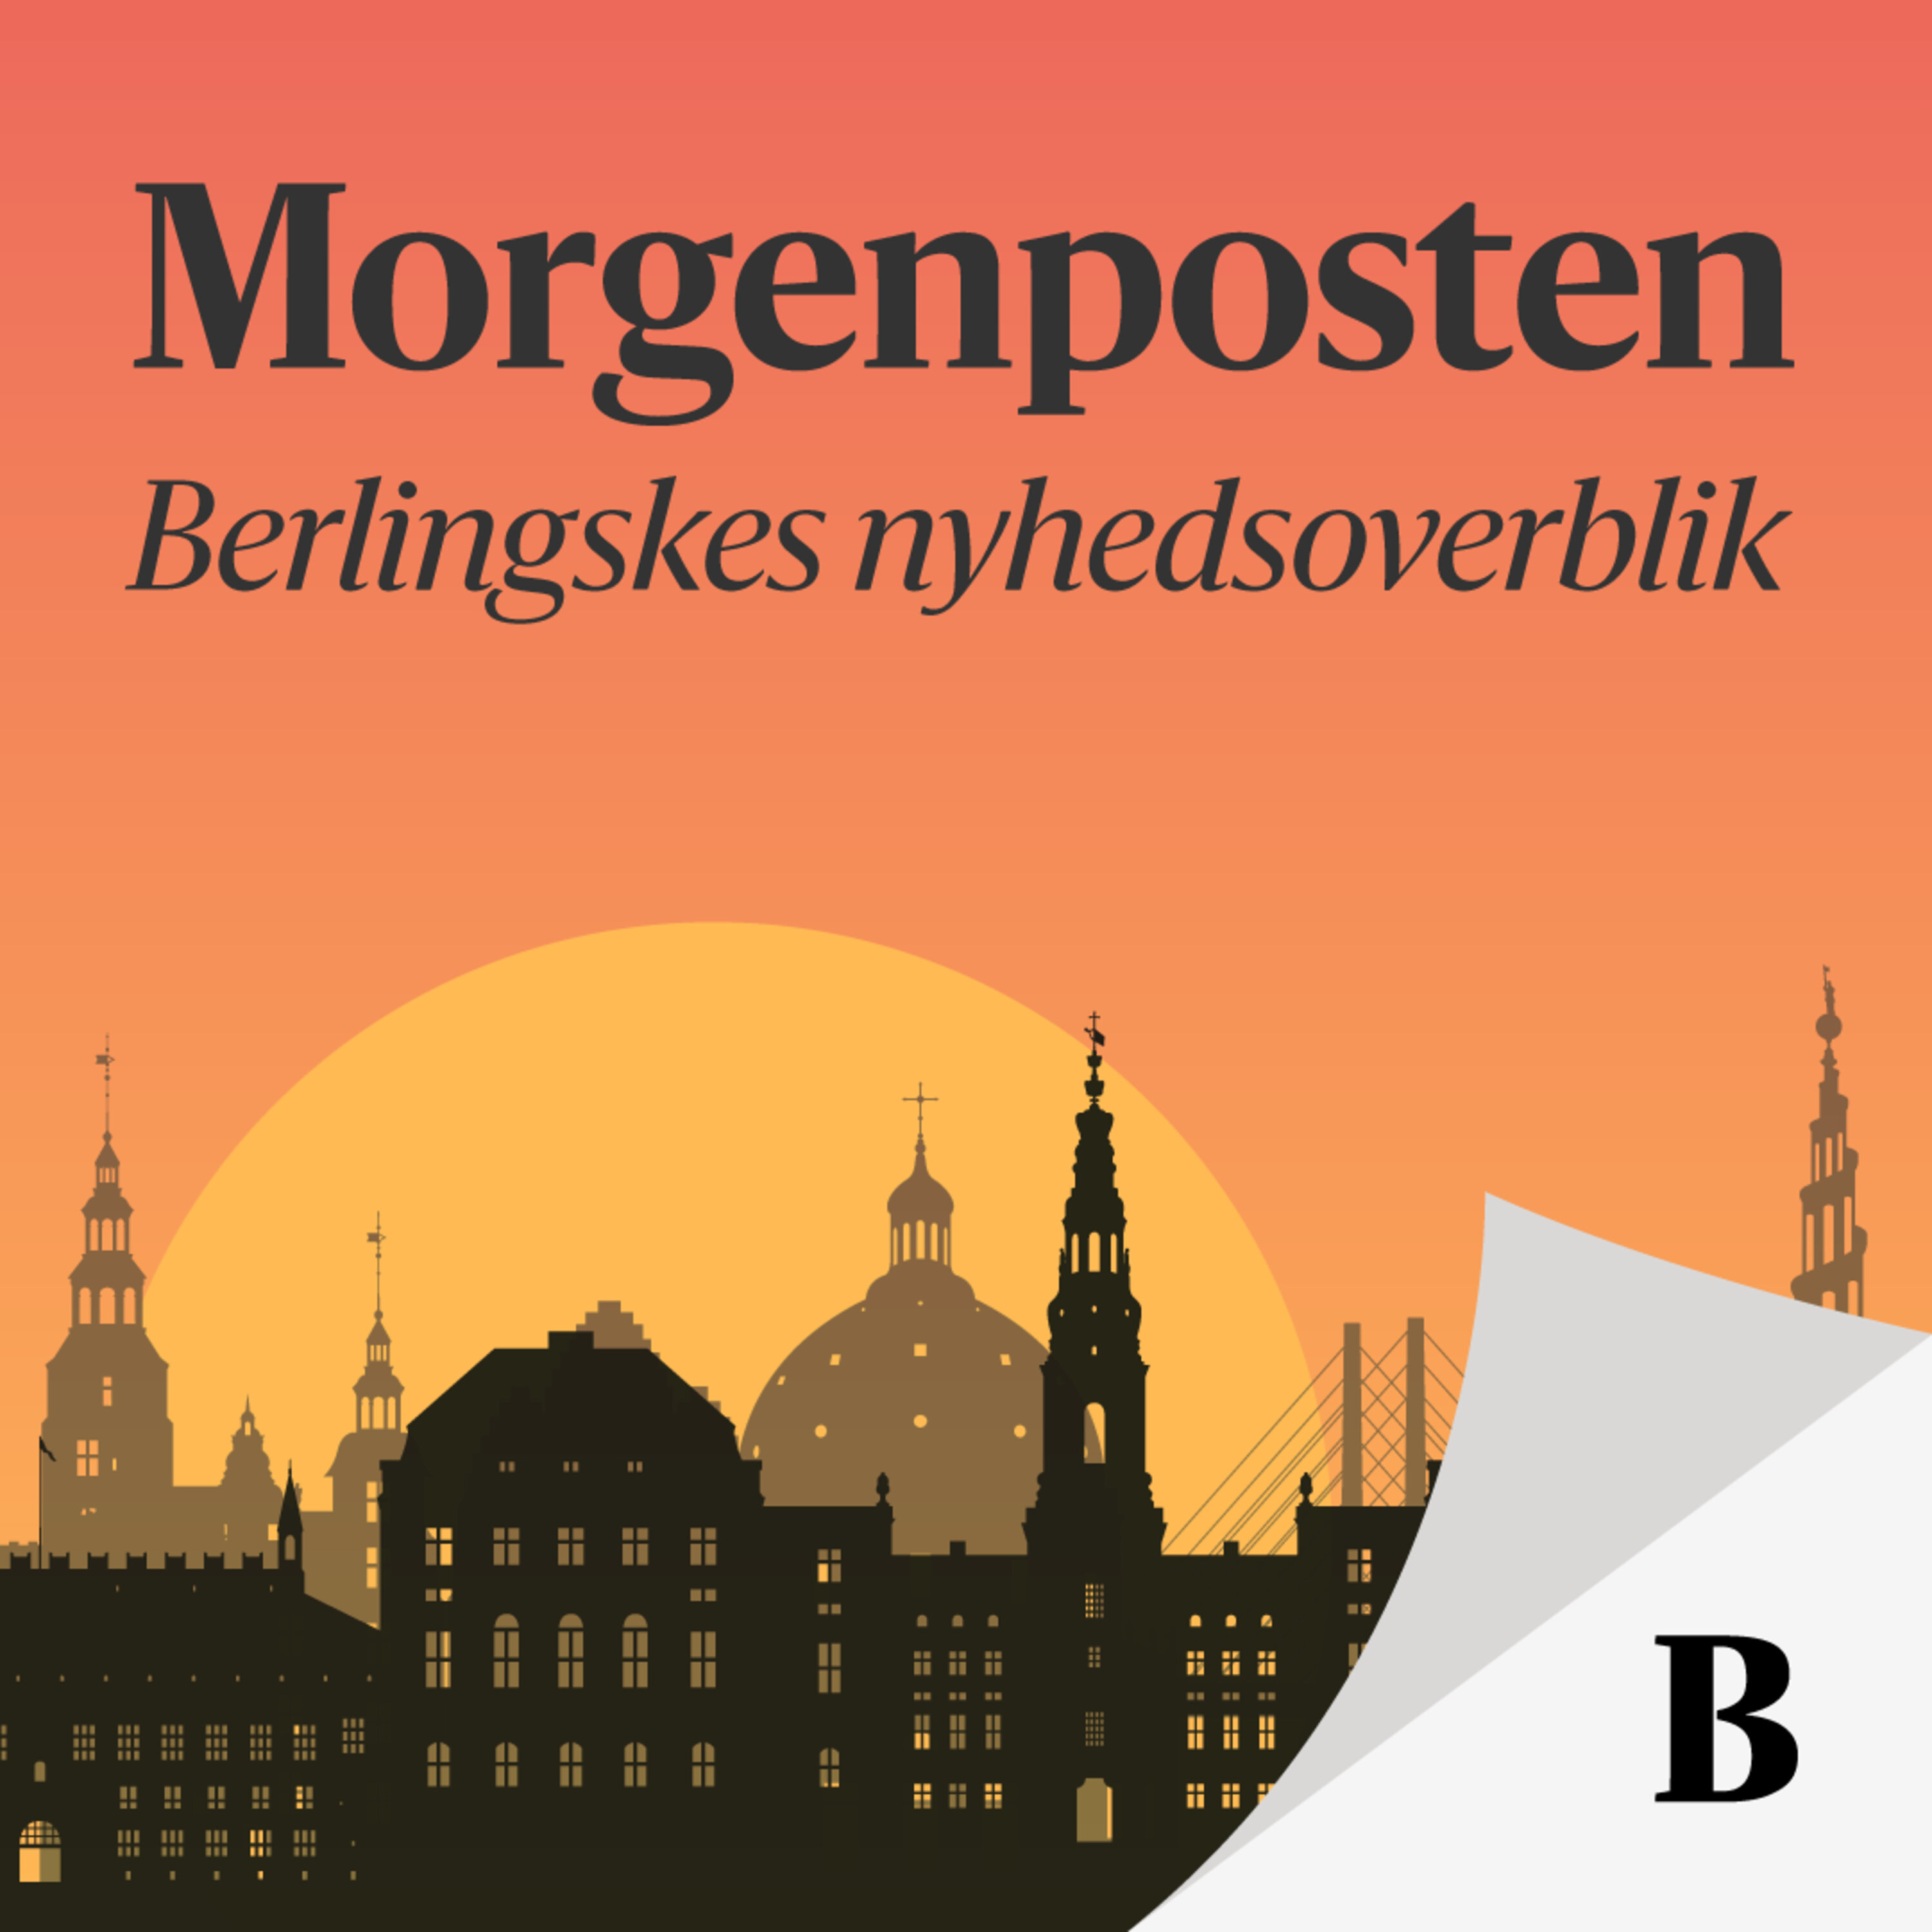 Danskere storkøber aktier - Flest indbrud i Nordsjælland - Kvinder ryger ud af arbejdsmarkedet